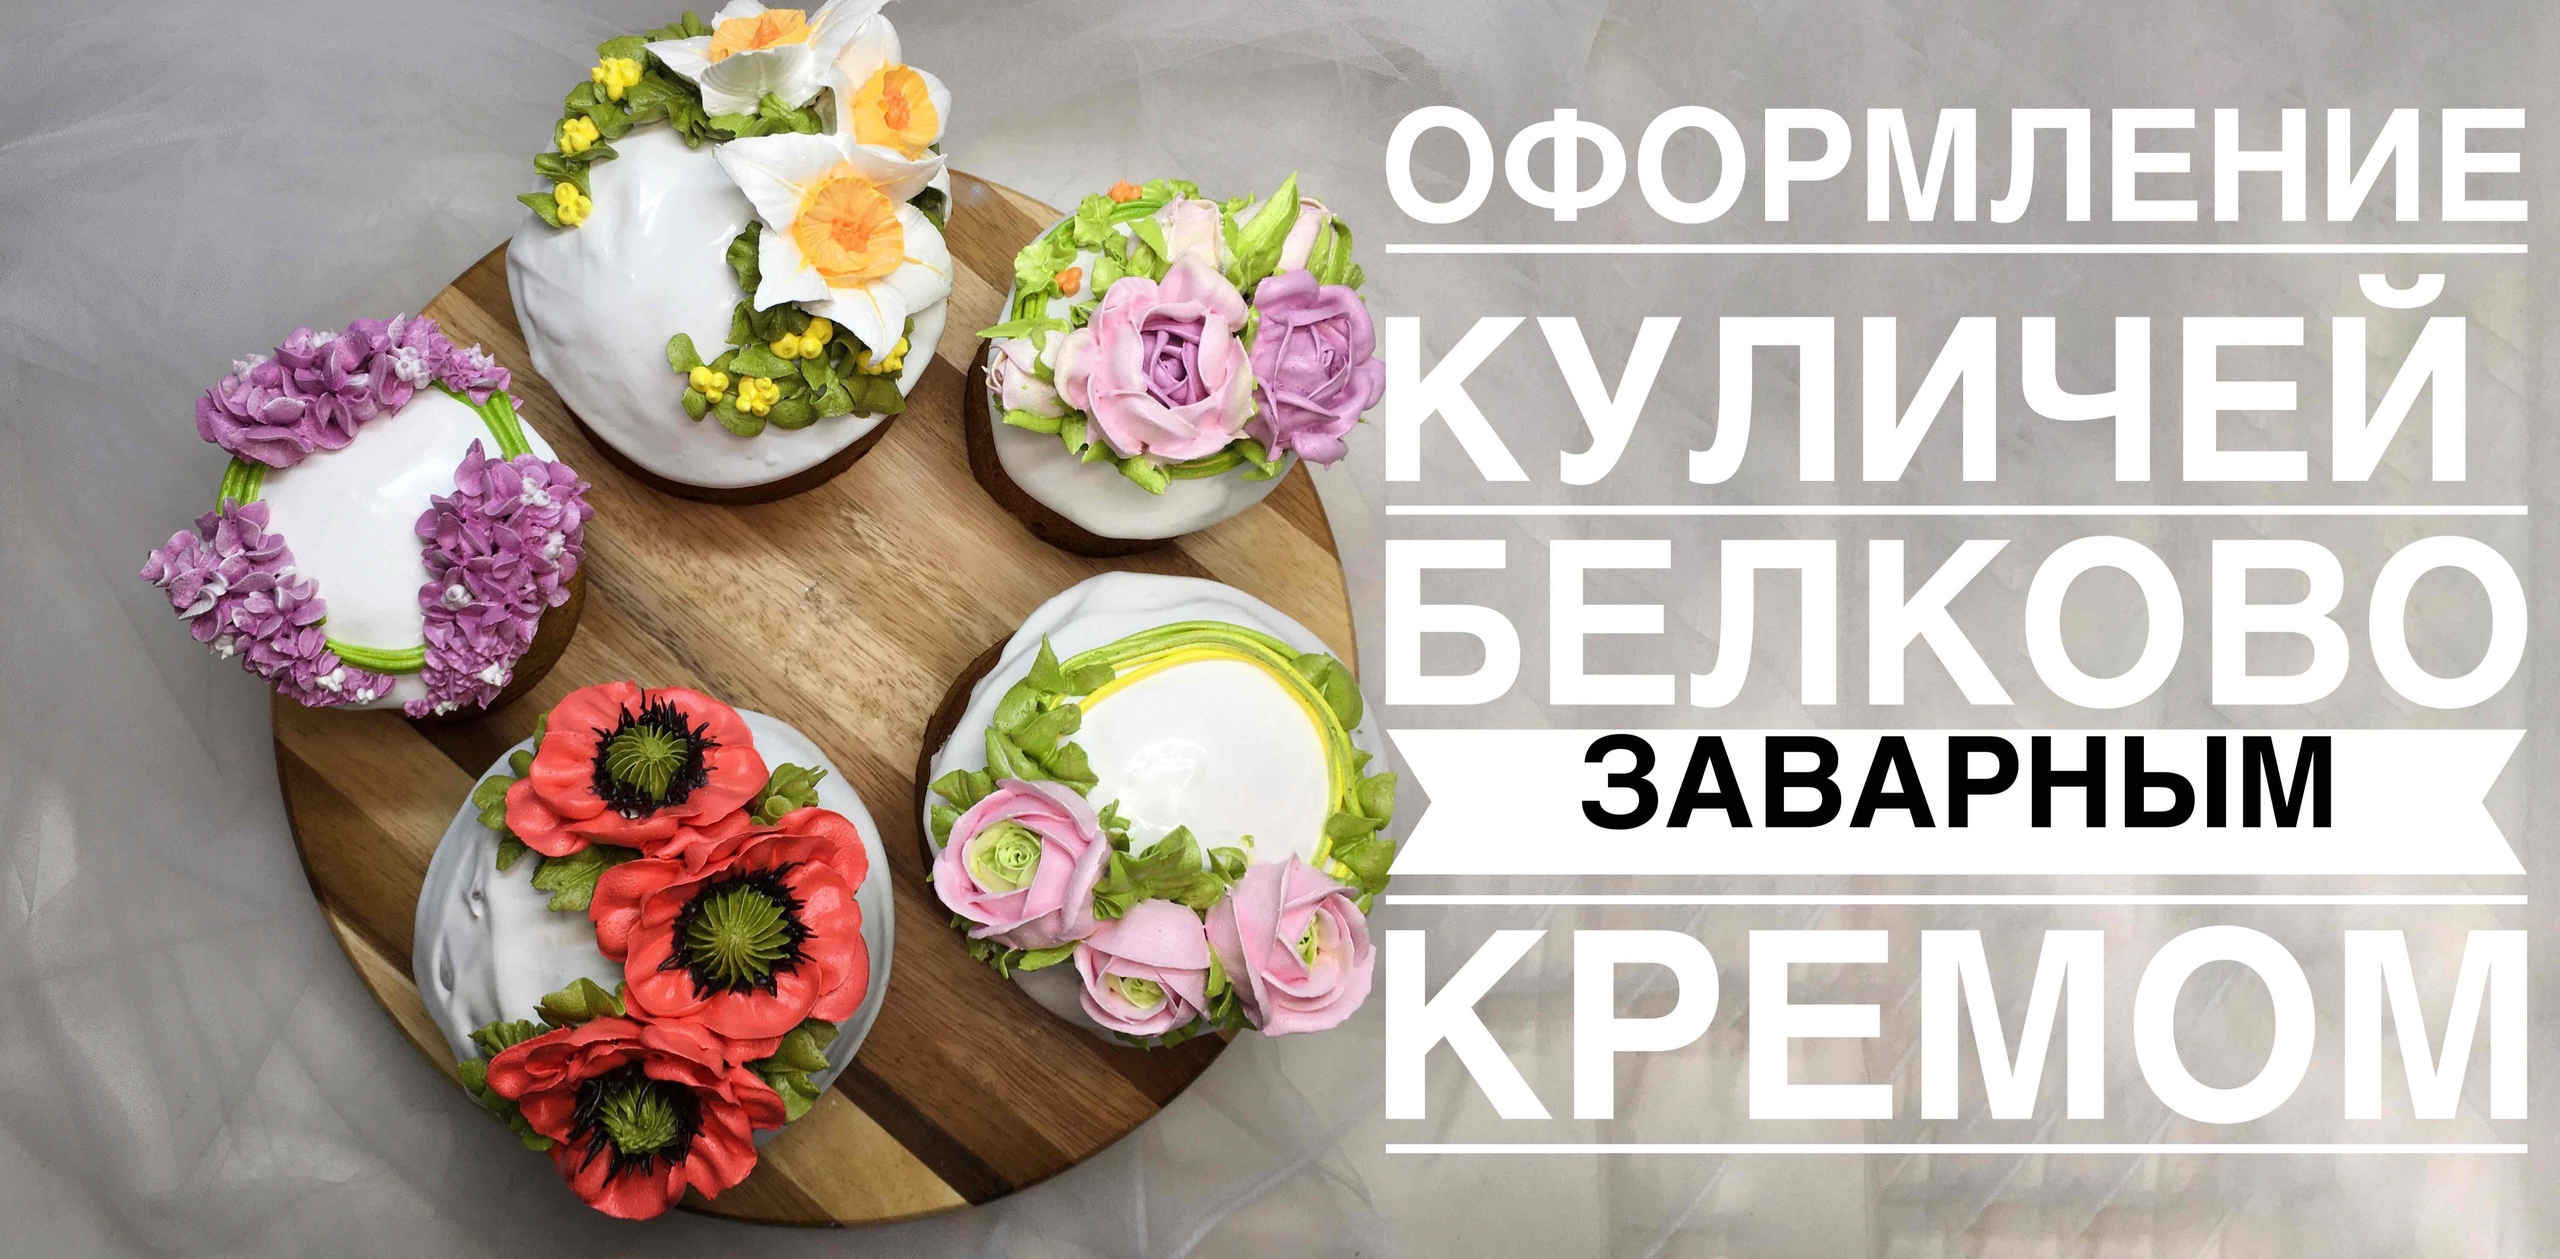 Оформление куличей цветами из крема_Cucumber decoration with cream flowers.